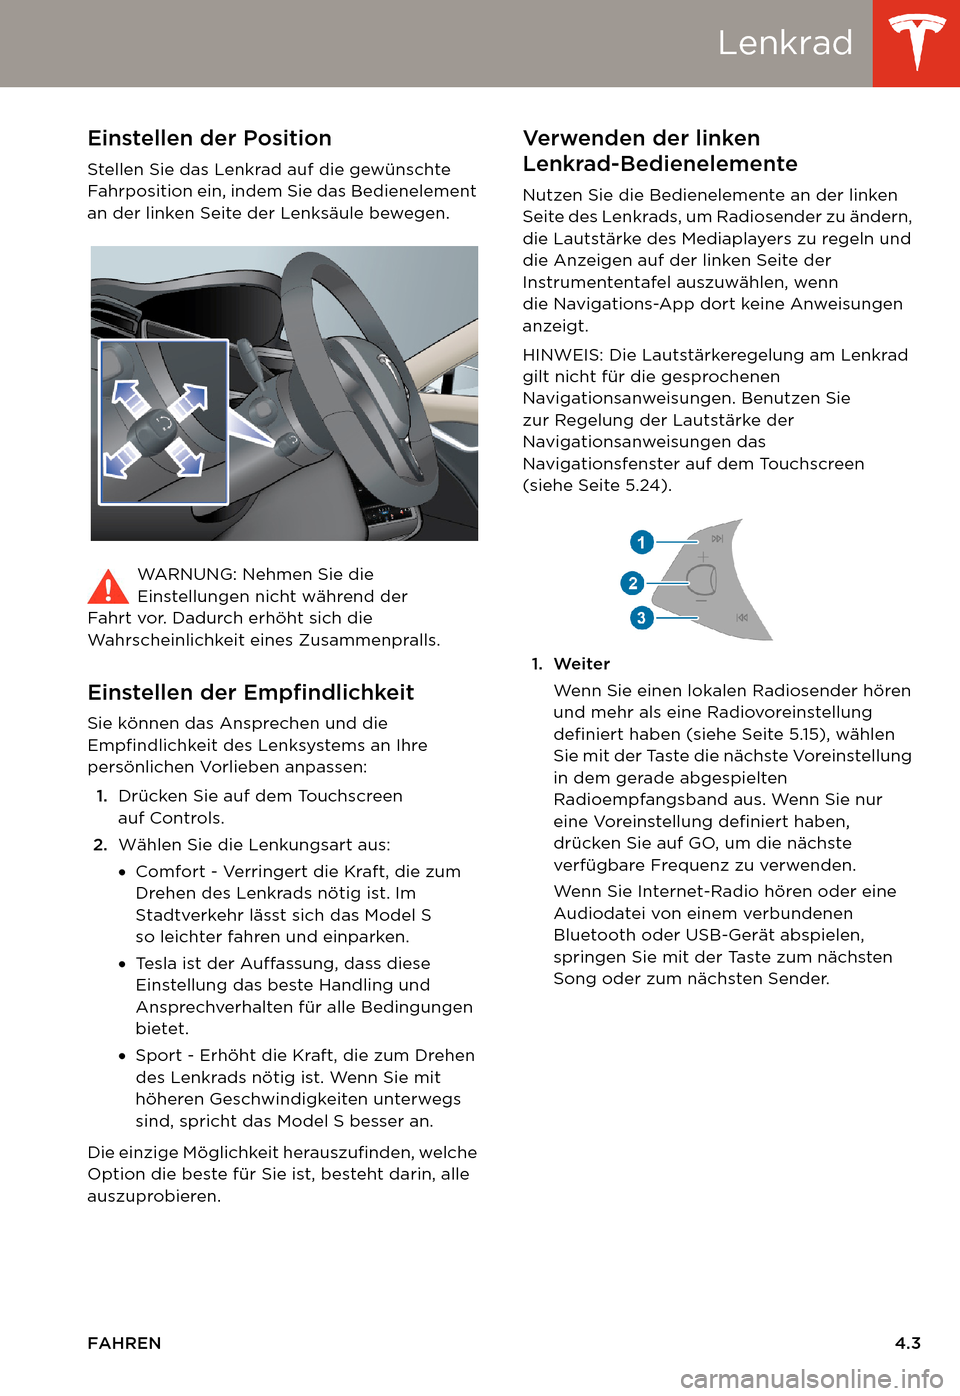 TESLA MODEL S 2014  Betriebsanleitung (in German) Lenkrad
FAHREN4.3
LenkradEinstellen der Position
Stellen Sie das Lenkrad auf die gewünschte 
Fahrposition ein, indem Sie das Bedienelement 
an der linken Seite der Lenksäule bewegen.
WARNUNG: Nehmen